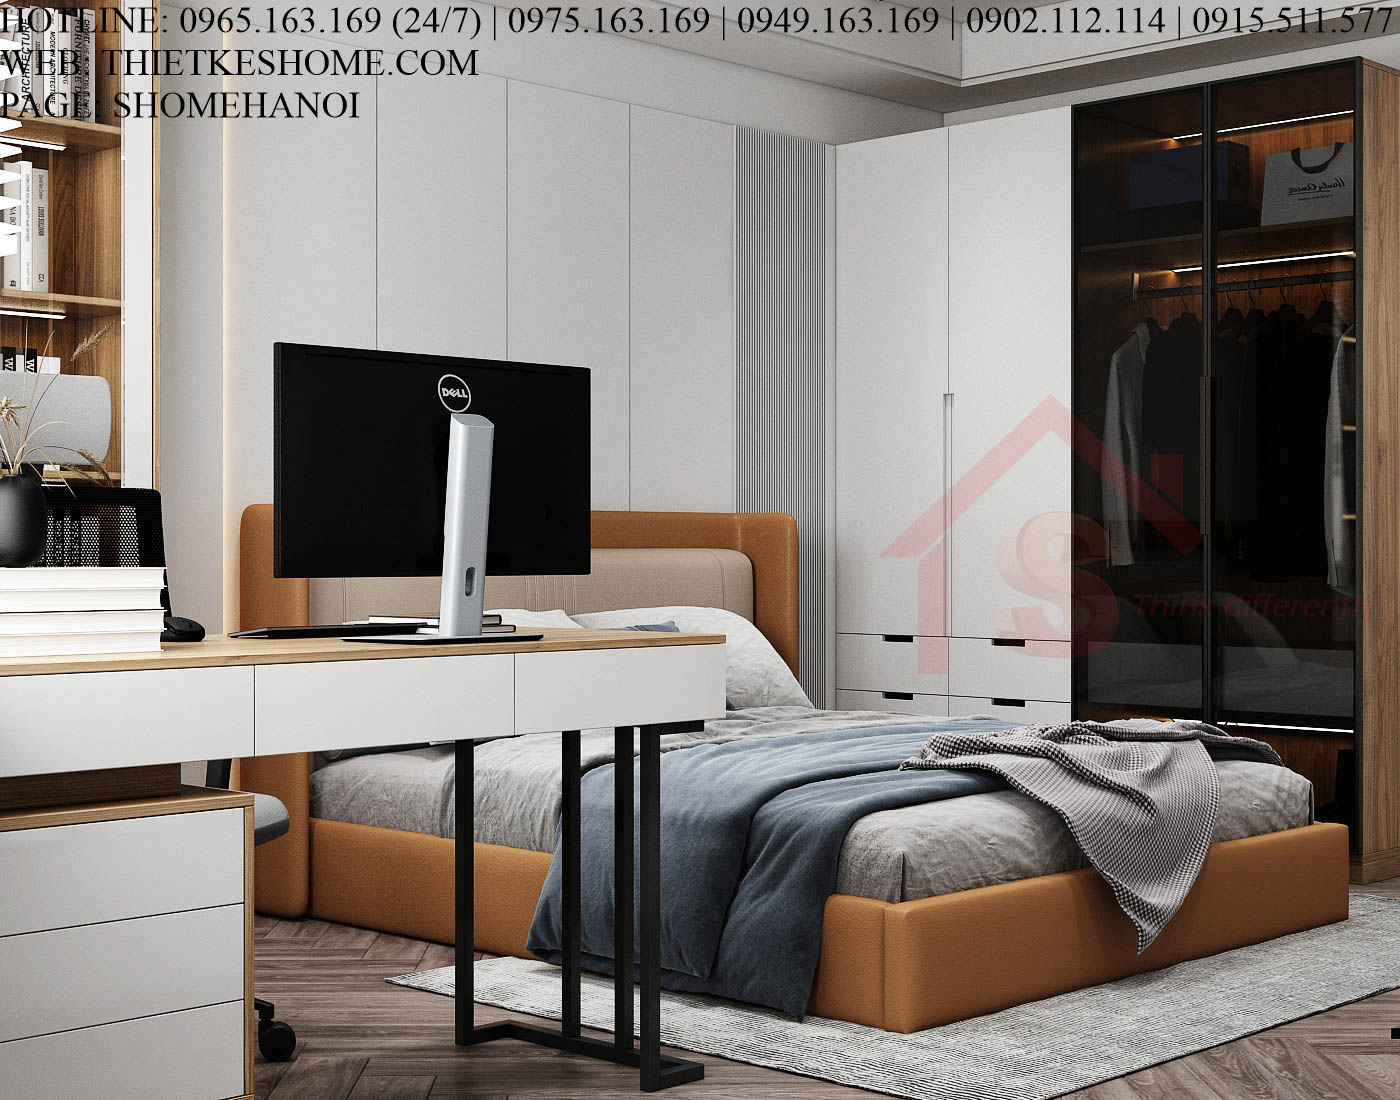 S HOME Combo mẫu nội thất phòng ngủ đẹp hiện đại tiện dụng SHOME6808